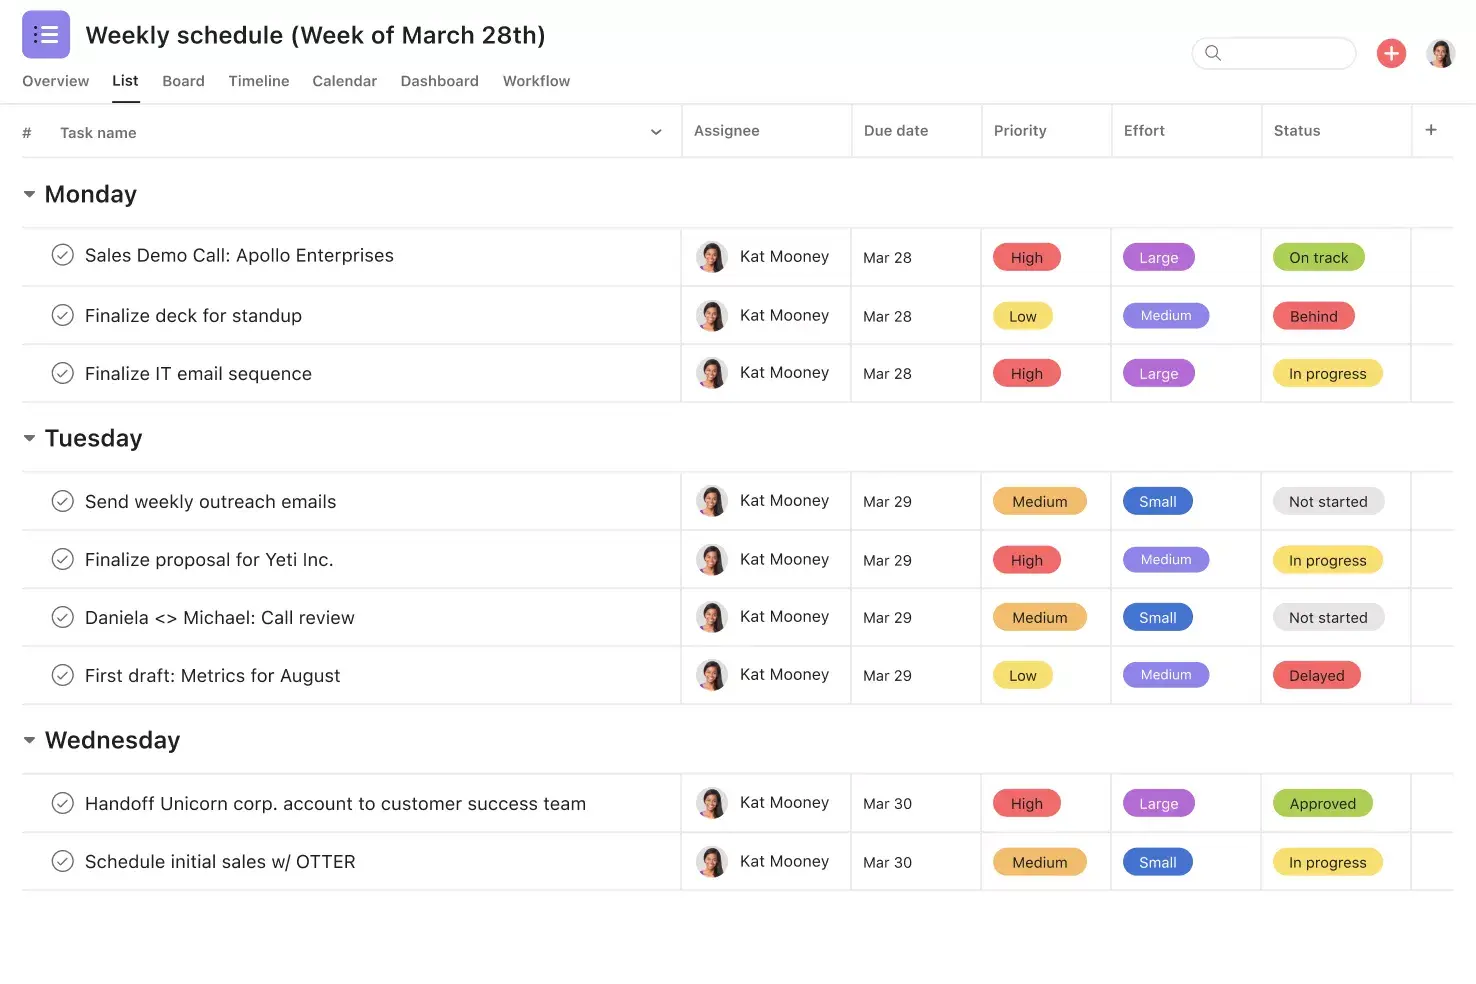 [Interface do produto] Agenda semanal ordenada por prioridade, esforço e status (formato de lista)